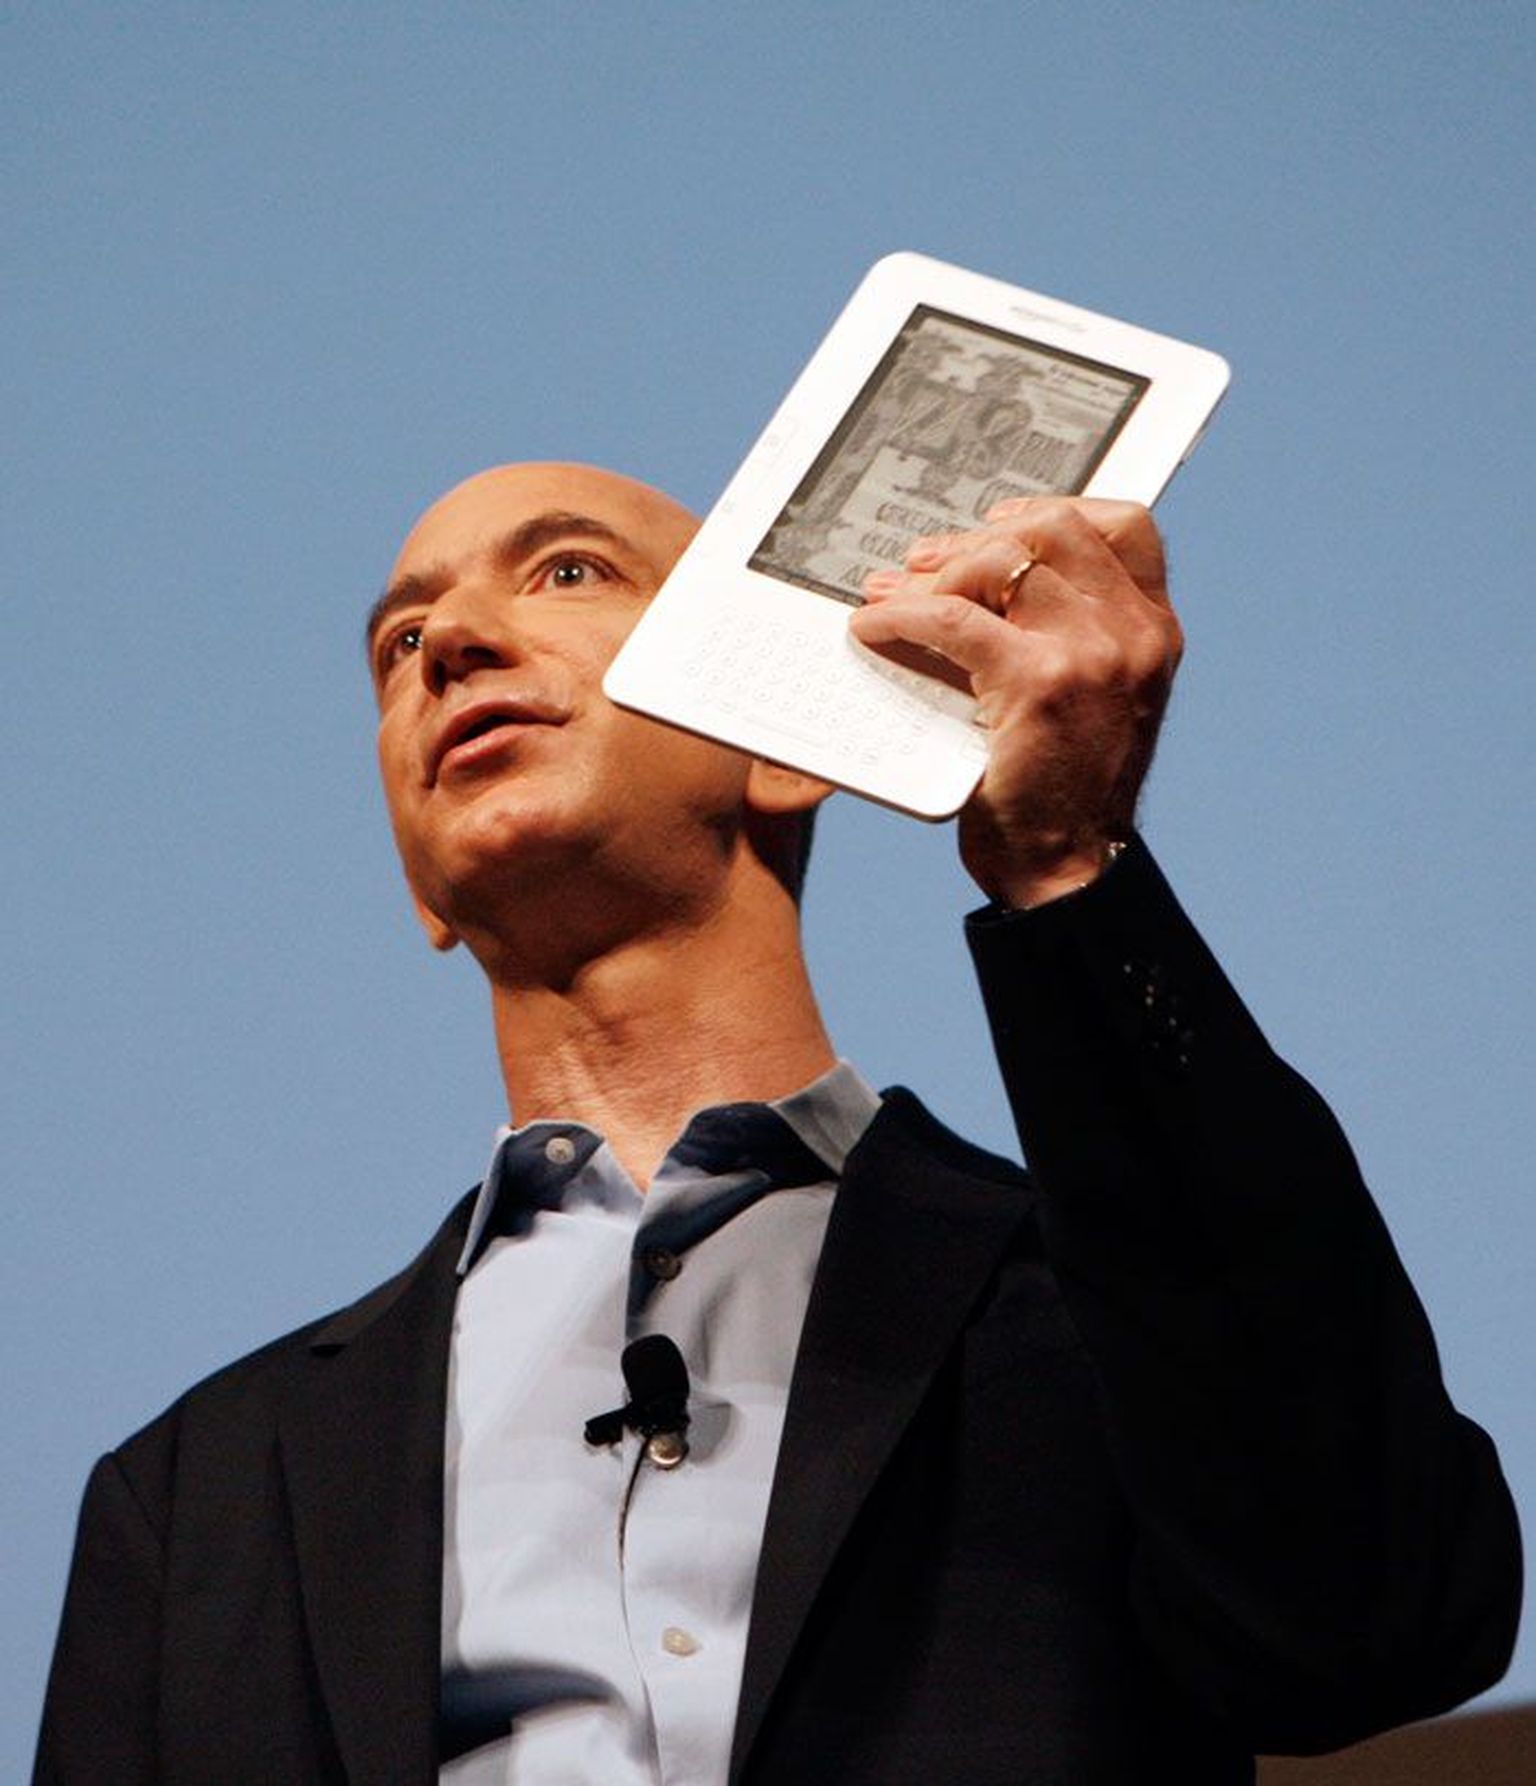 Amazoni tegevjuht Jeff Bezos hoiab käes edukaimat e-raamatulugejat Kindle.